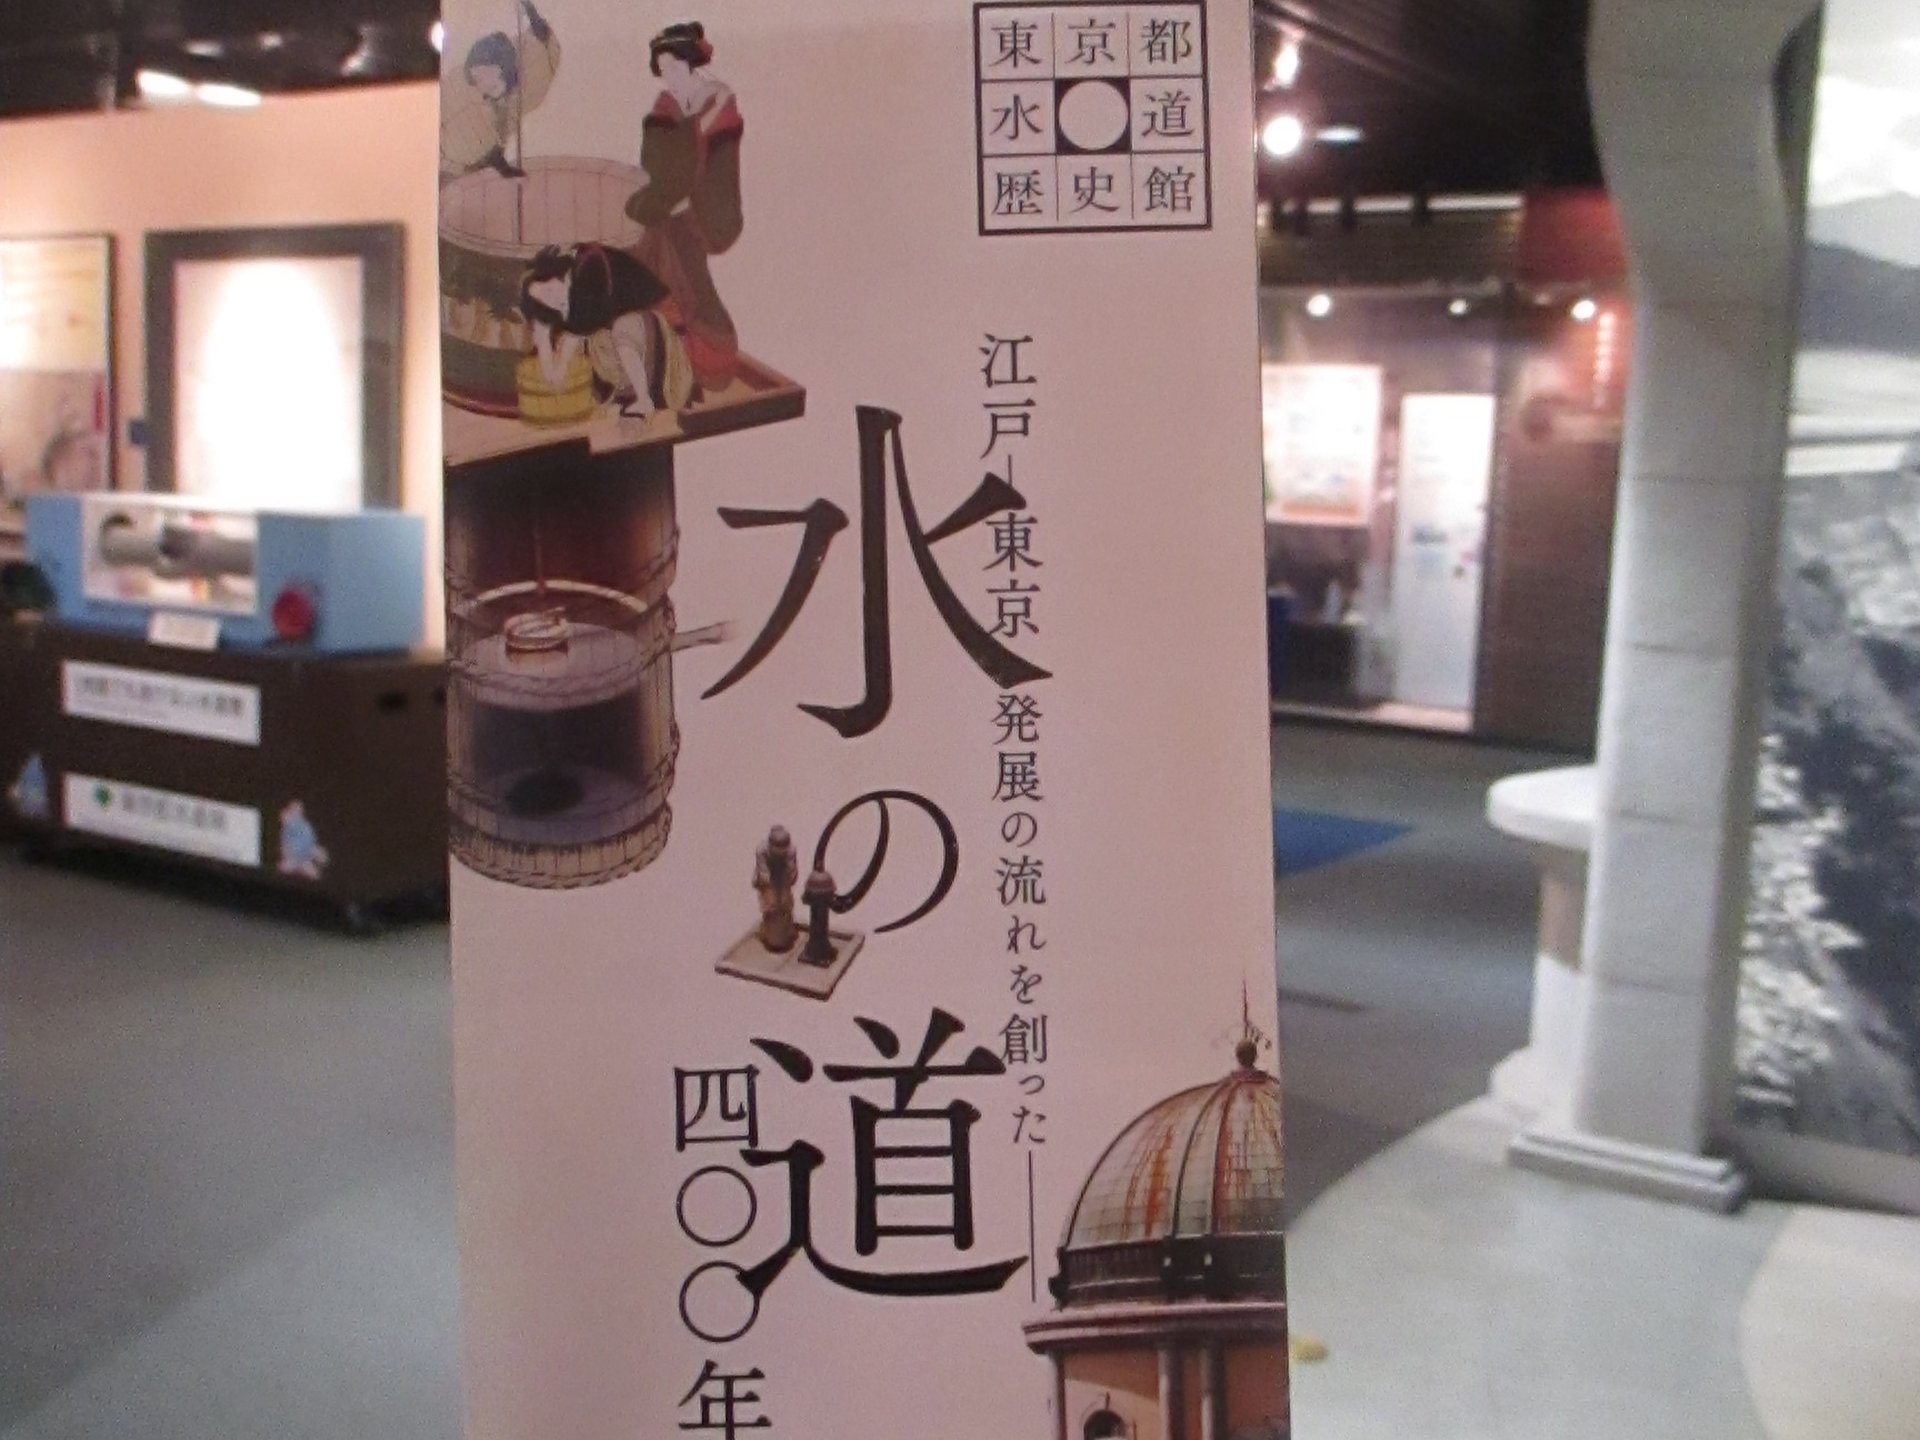 水滴くんが皆さんのお越しを歓迎してくれる「東京都水道歴史館」へ遊びに行こう☆彡